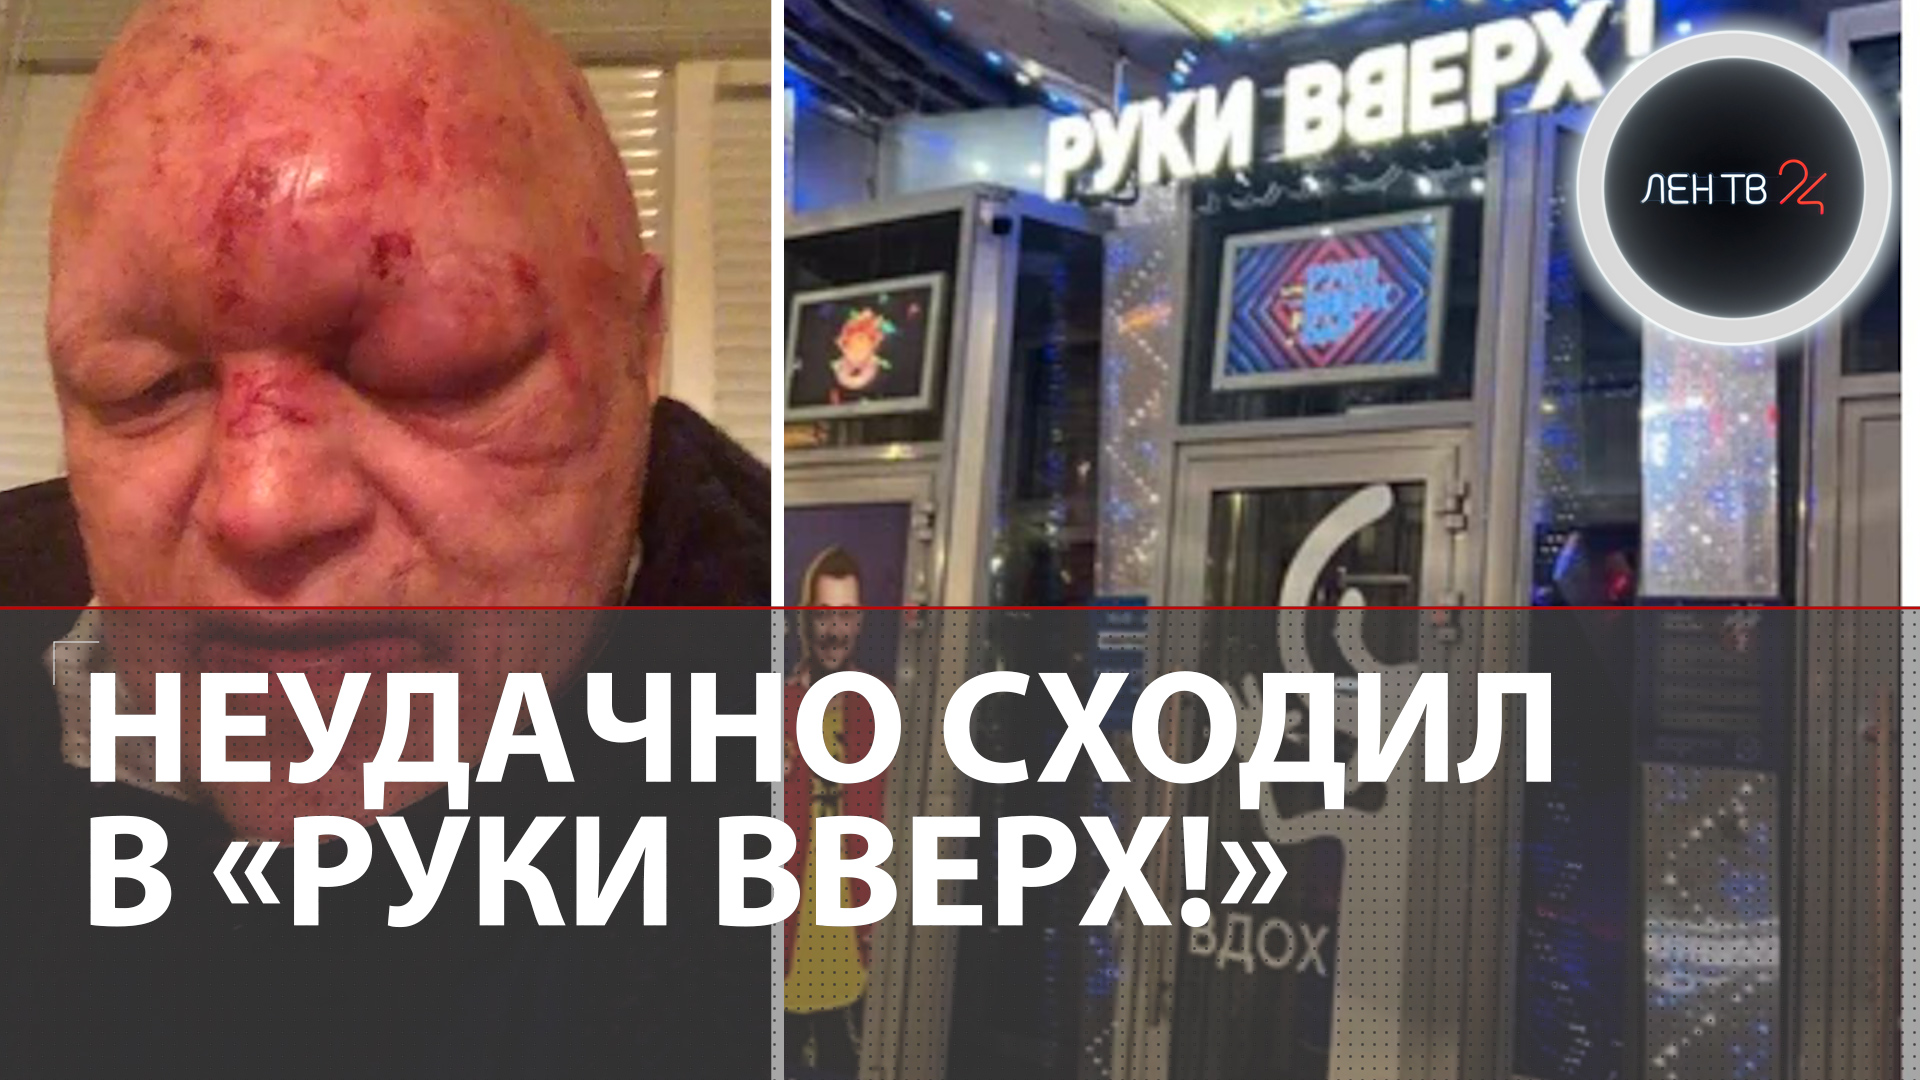 Стаса Барецкого избили и ограбили у клуба «Руки Вверх» в Петербурге